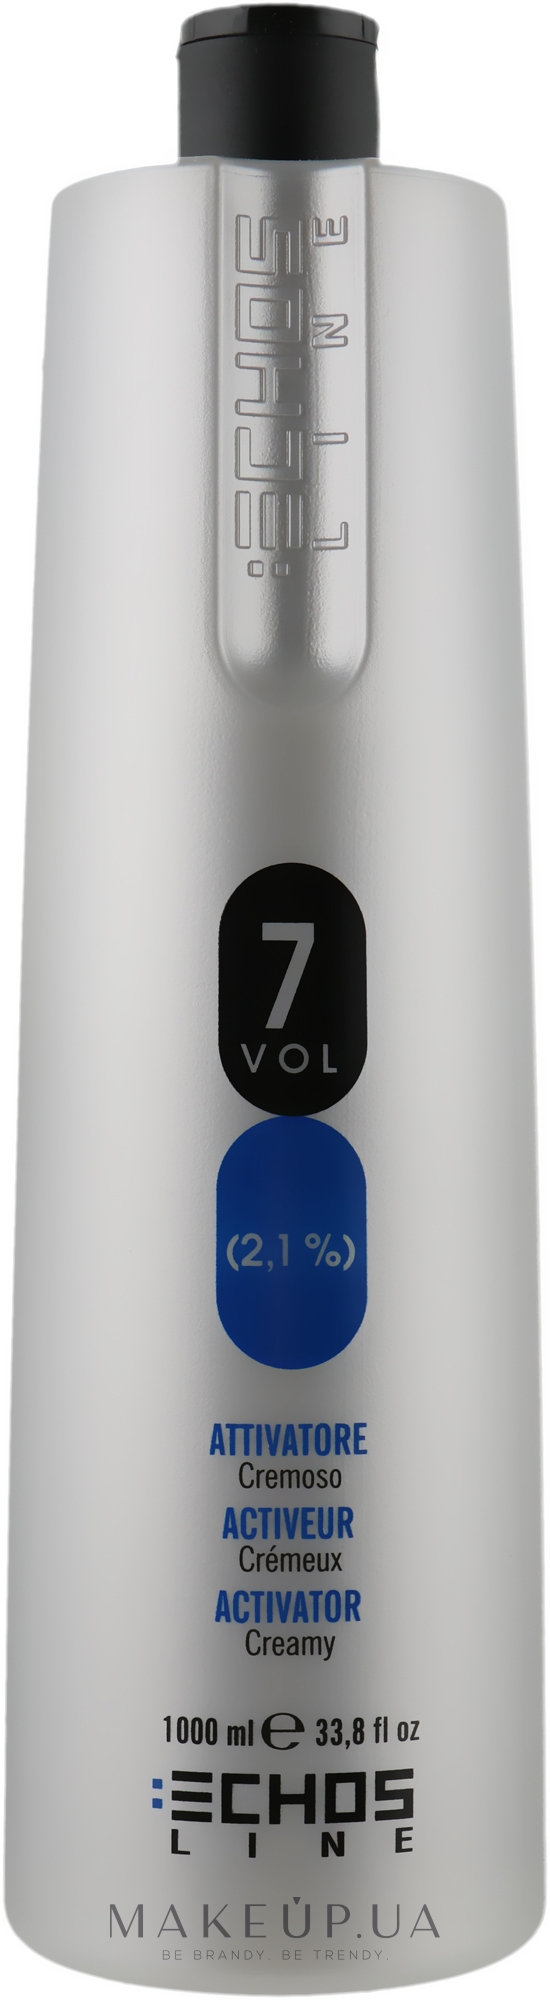 Крем-активатор - Echosline Activator Creamy 7 vol (2,1%) — фото 1000ml